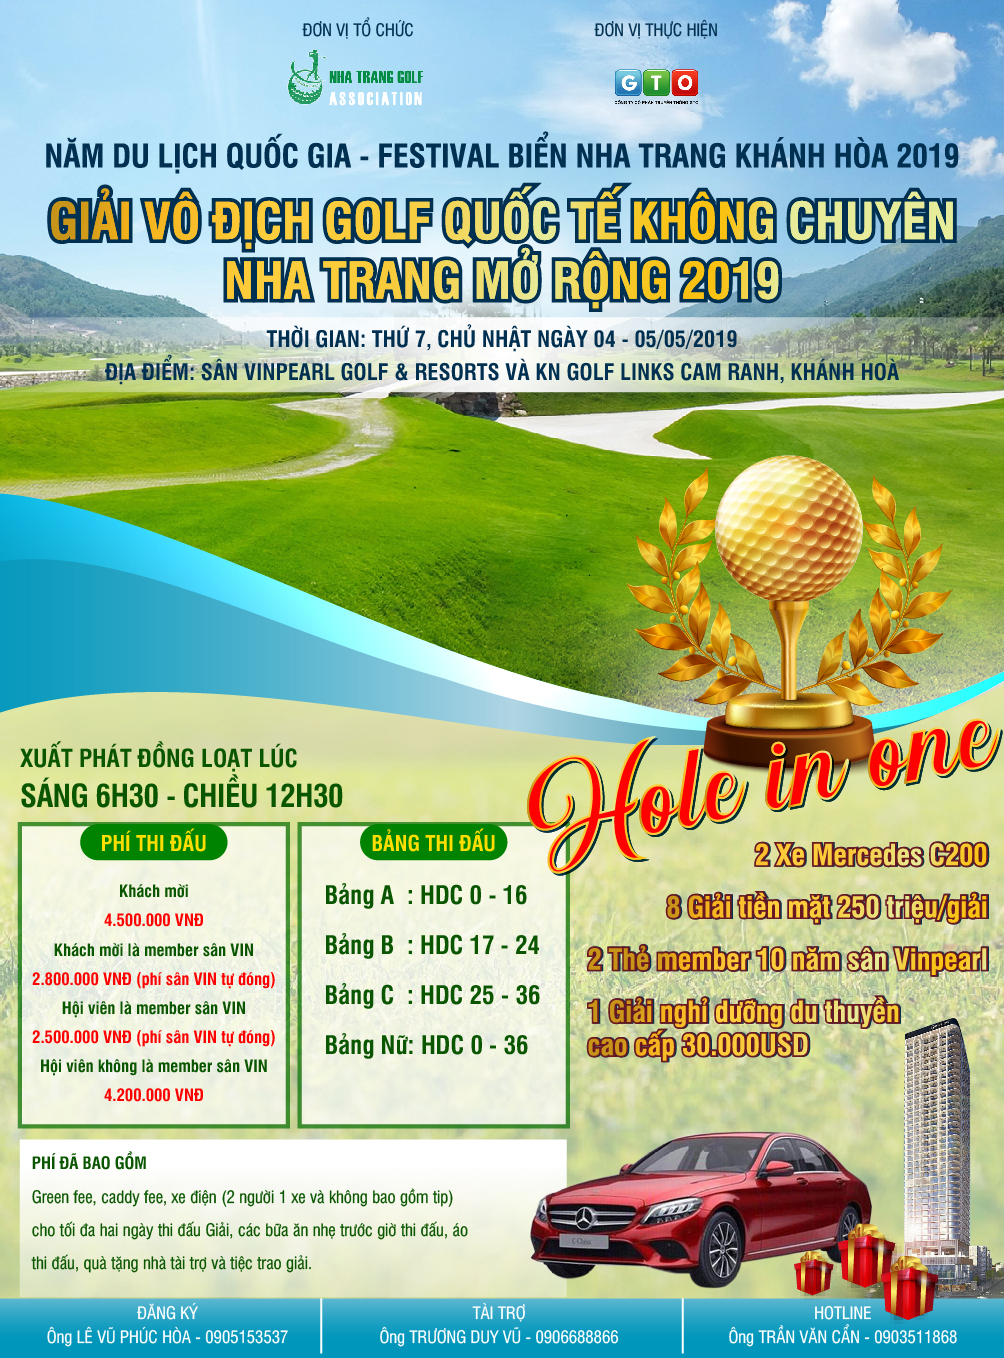 Festival biển Nha Trang sôi động cùng Giải vô địch Golf Quốc tế không chuyên Nha Trang mở rộng 2019